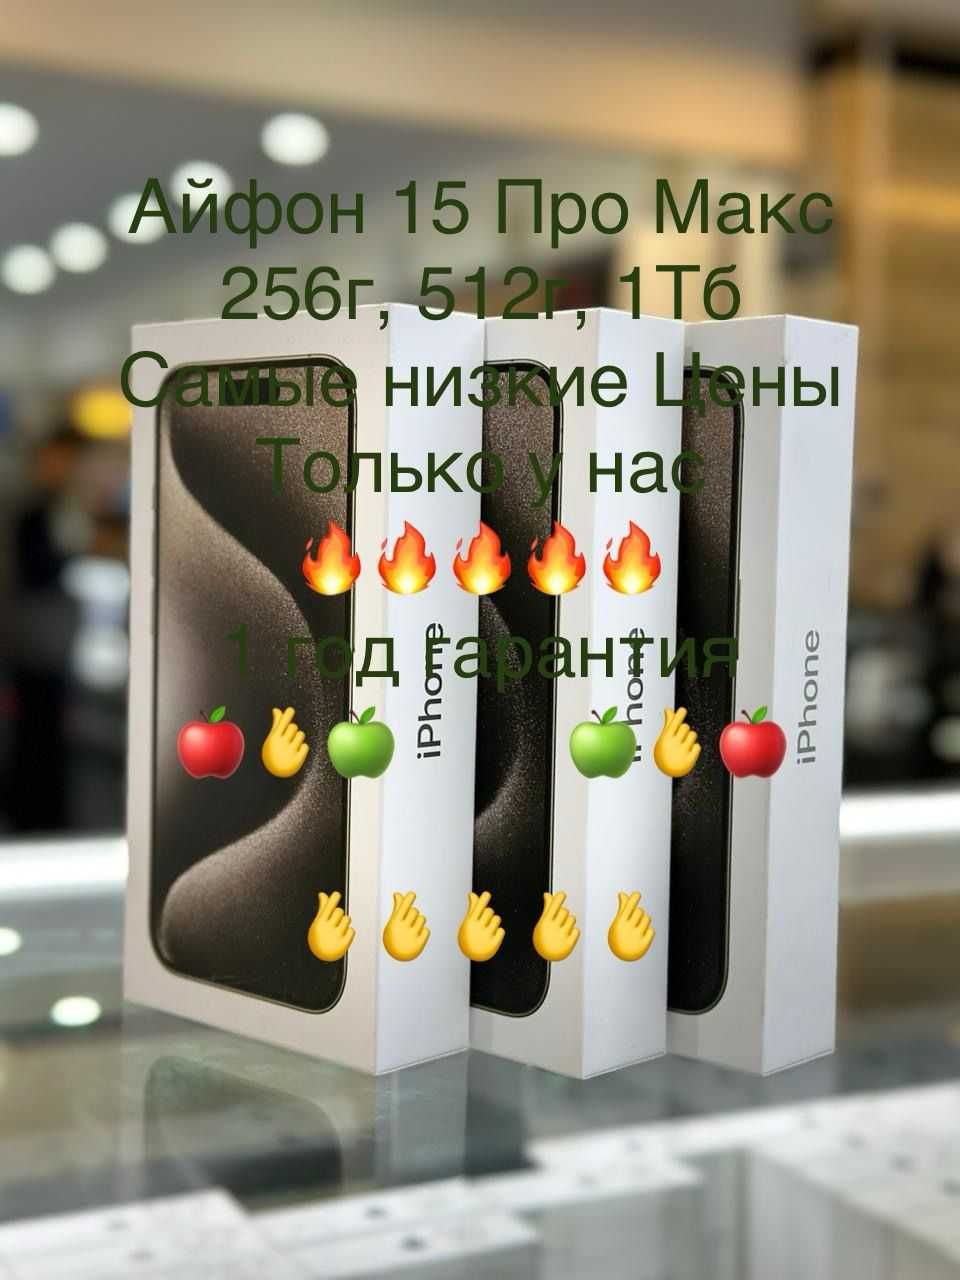 Айфон 15 Про Макс 1тб Белый Титан самые низкие оптовые цены в алматы